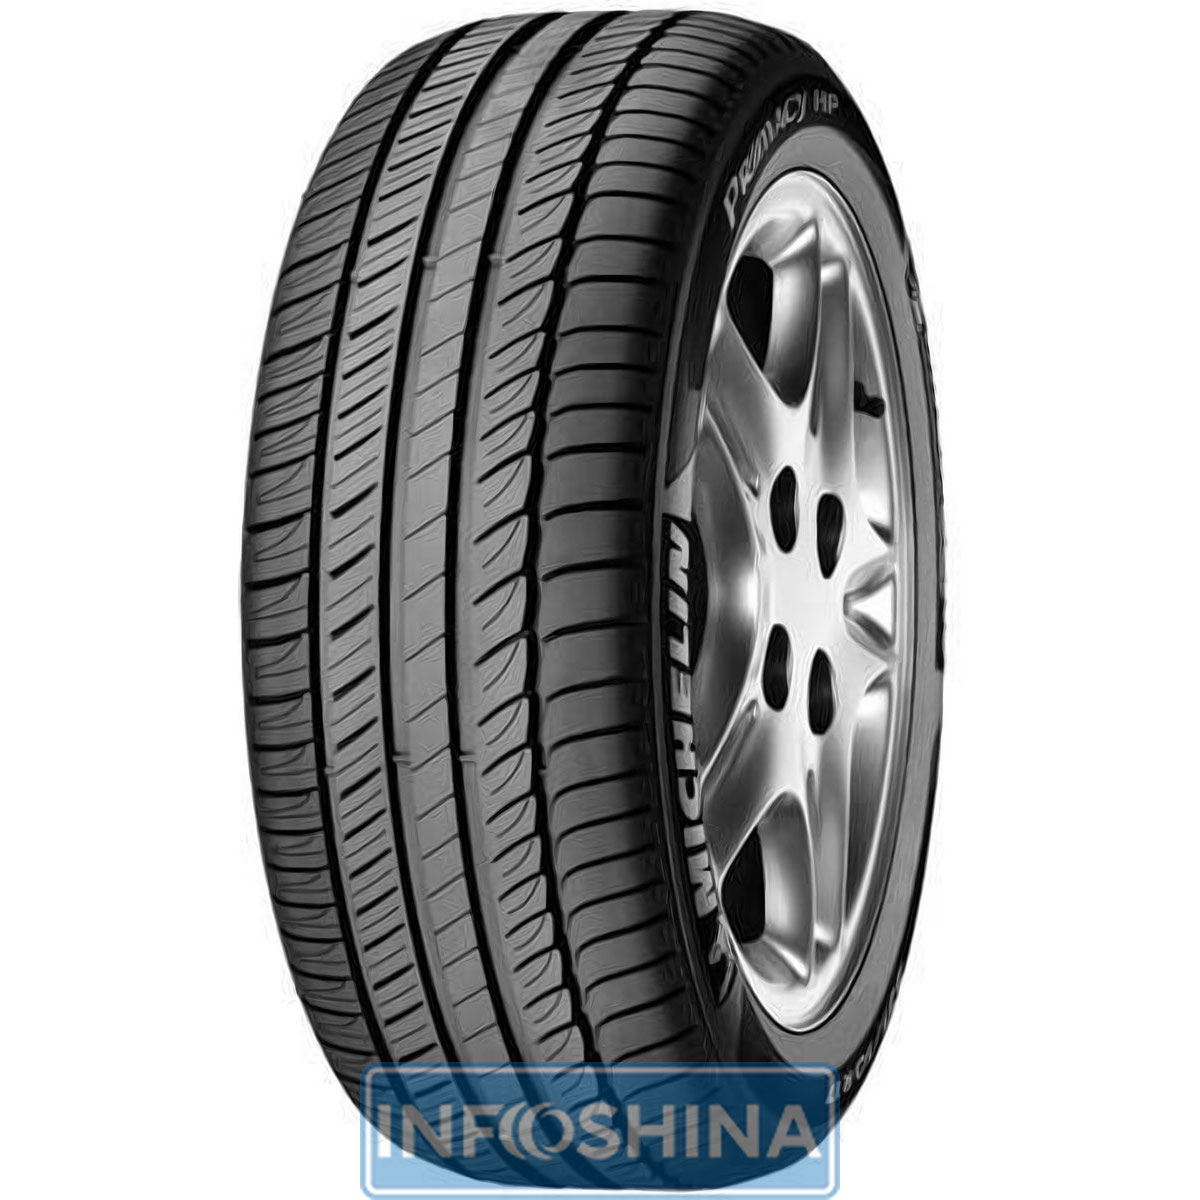 Купити шини Michelin Primacy HP 245/50 R18 100Y Run Flat